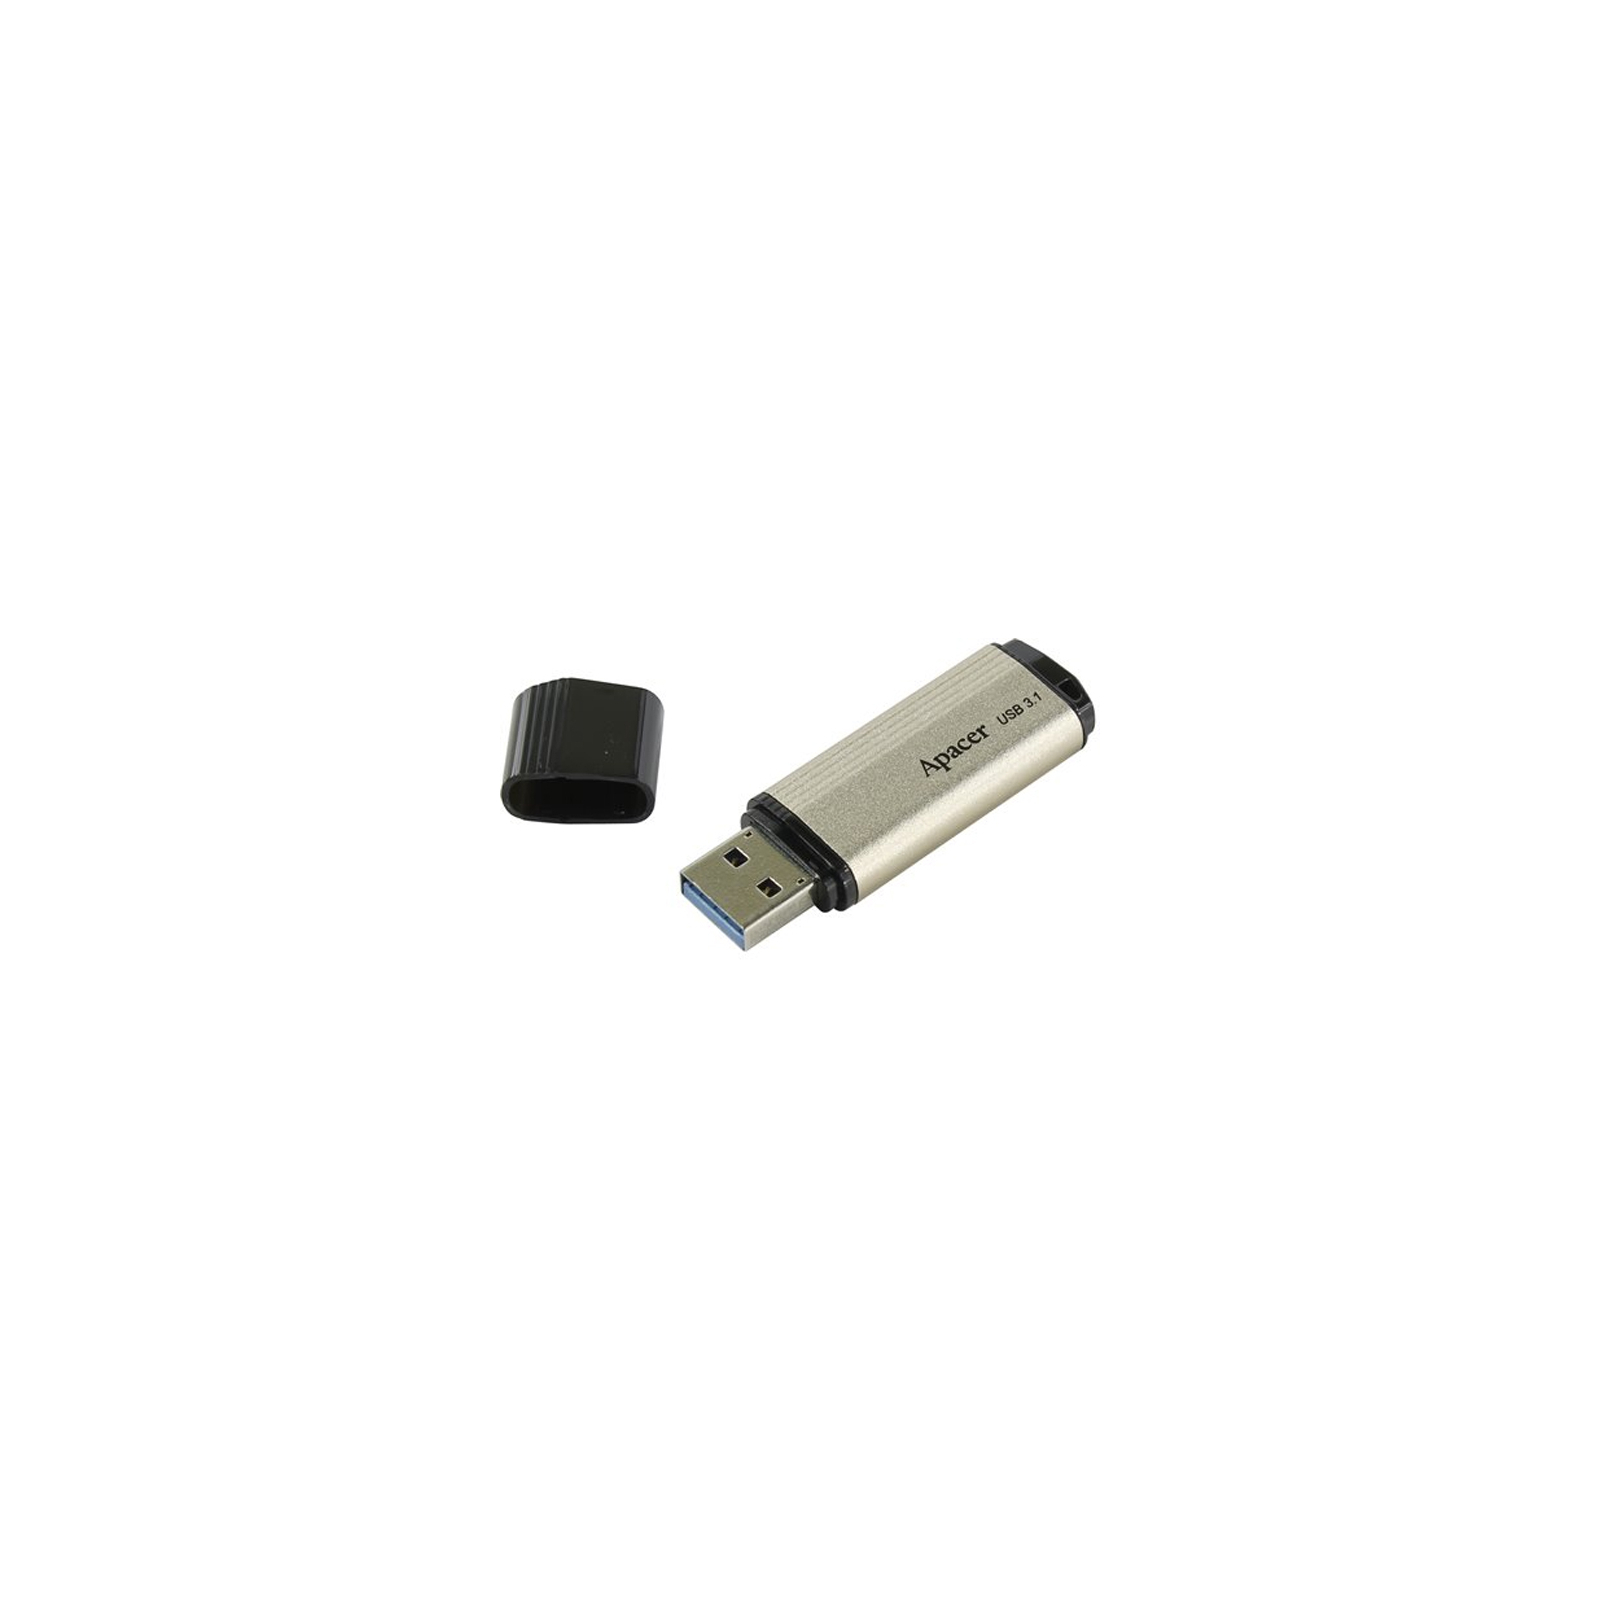 USB флеш накопитель Apacer 8GB AH353 Champagne Gold RP USB3.0 (AP8GAH353C-1) изображение 5